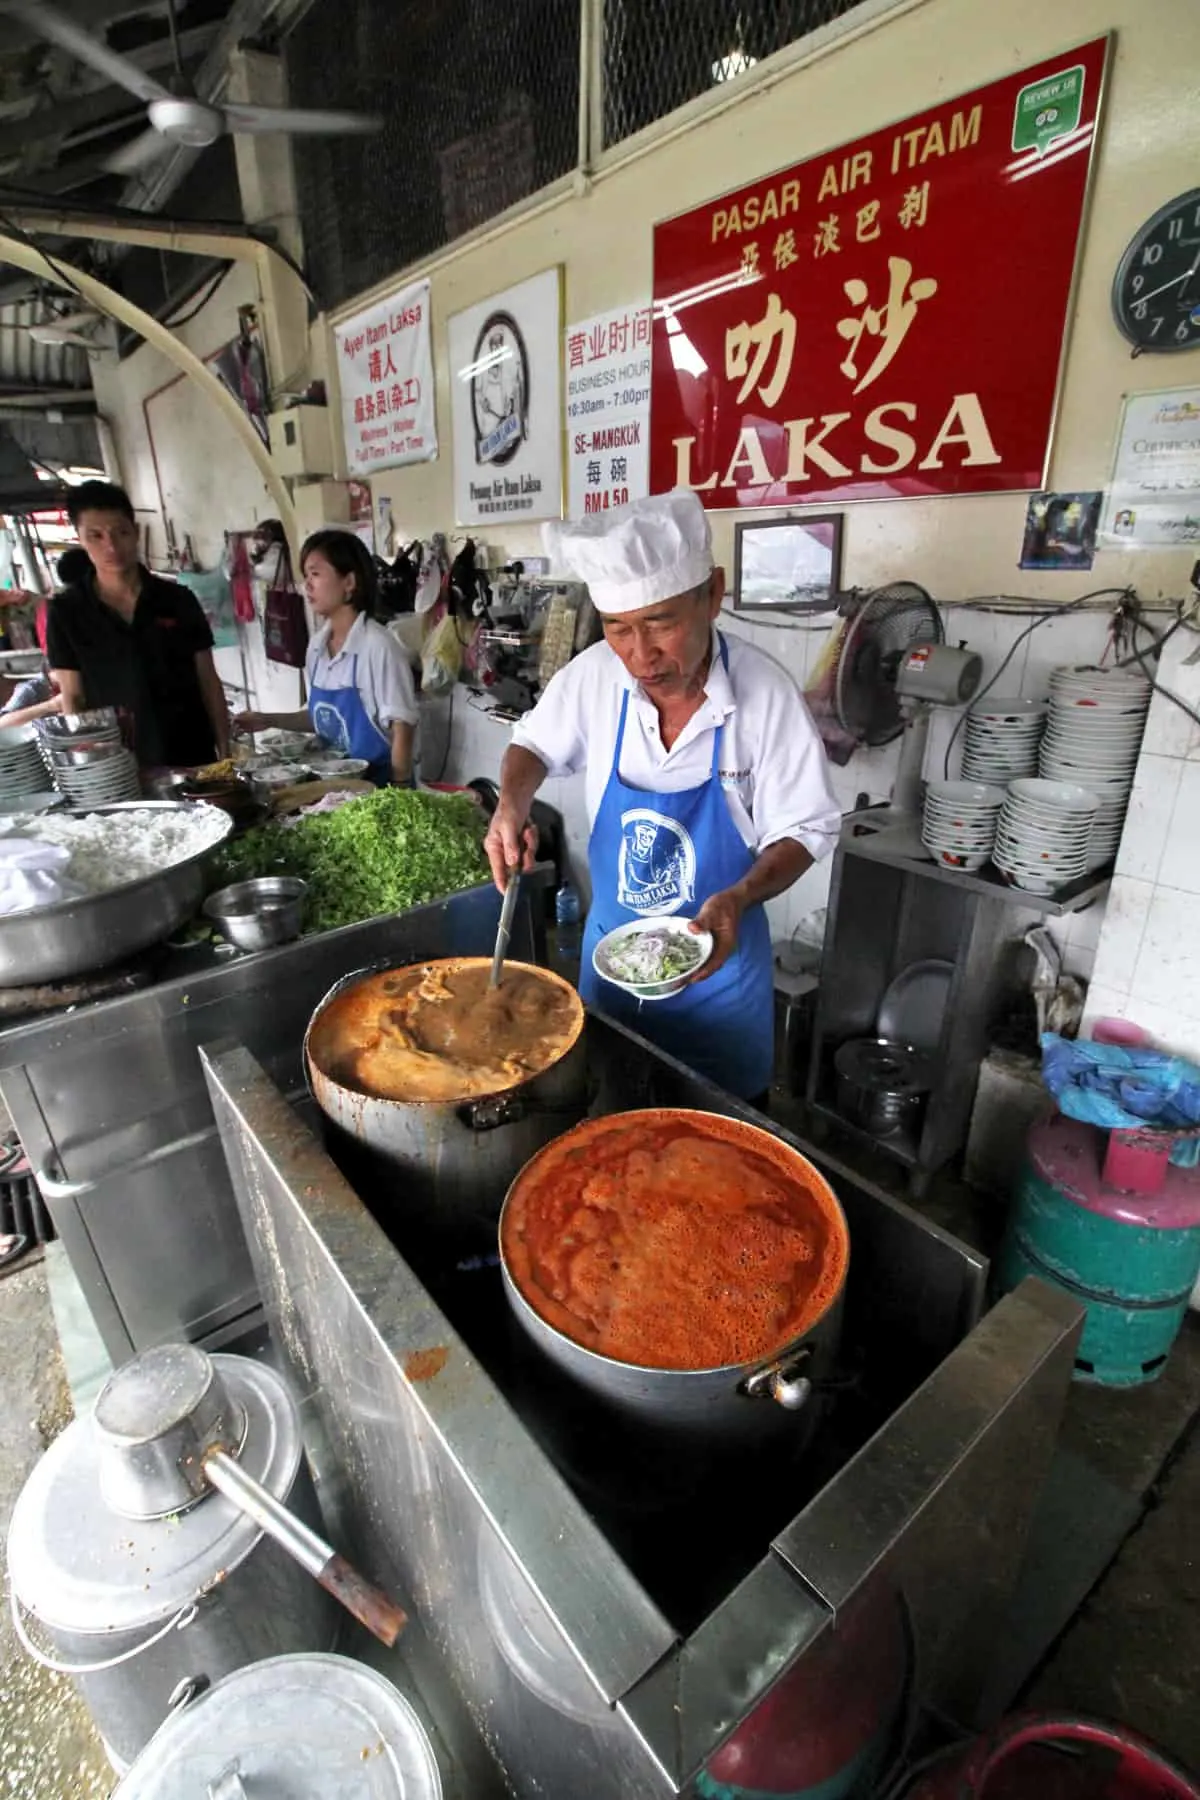 Restoran penang street food